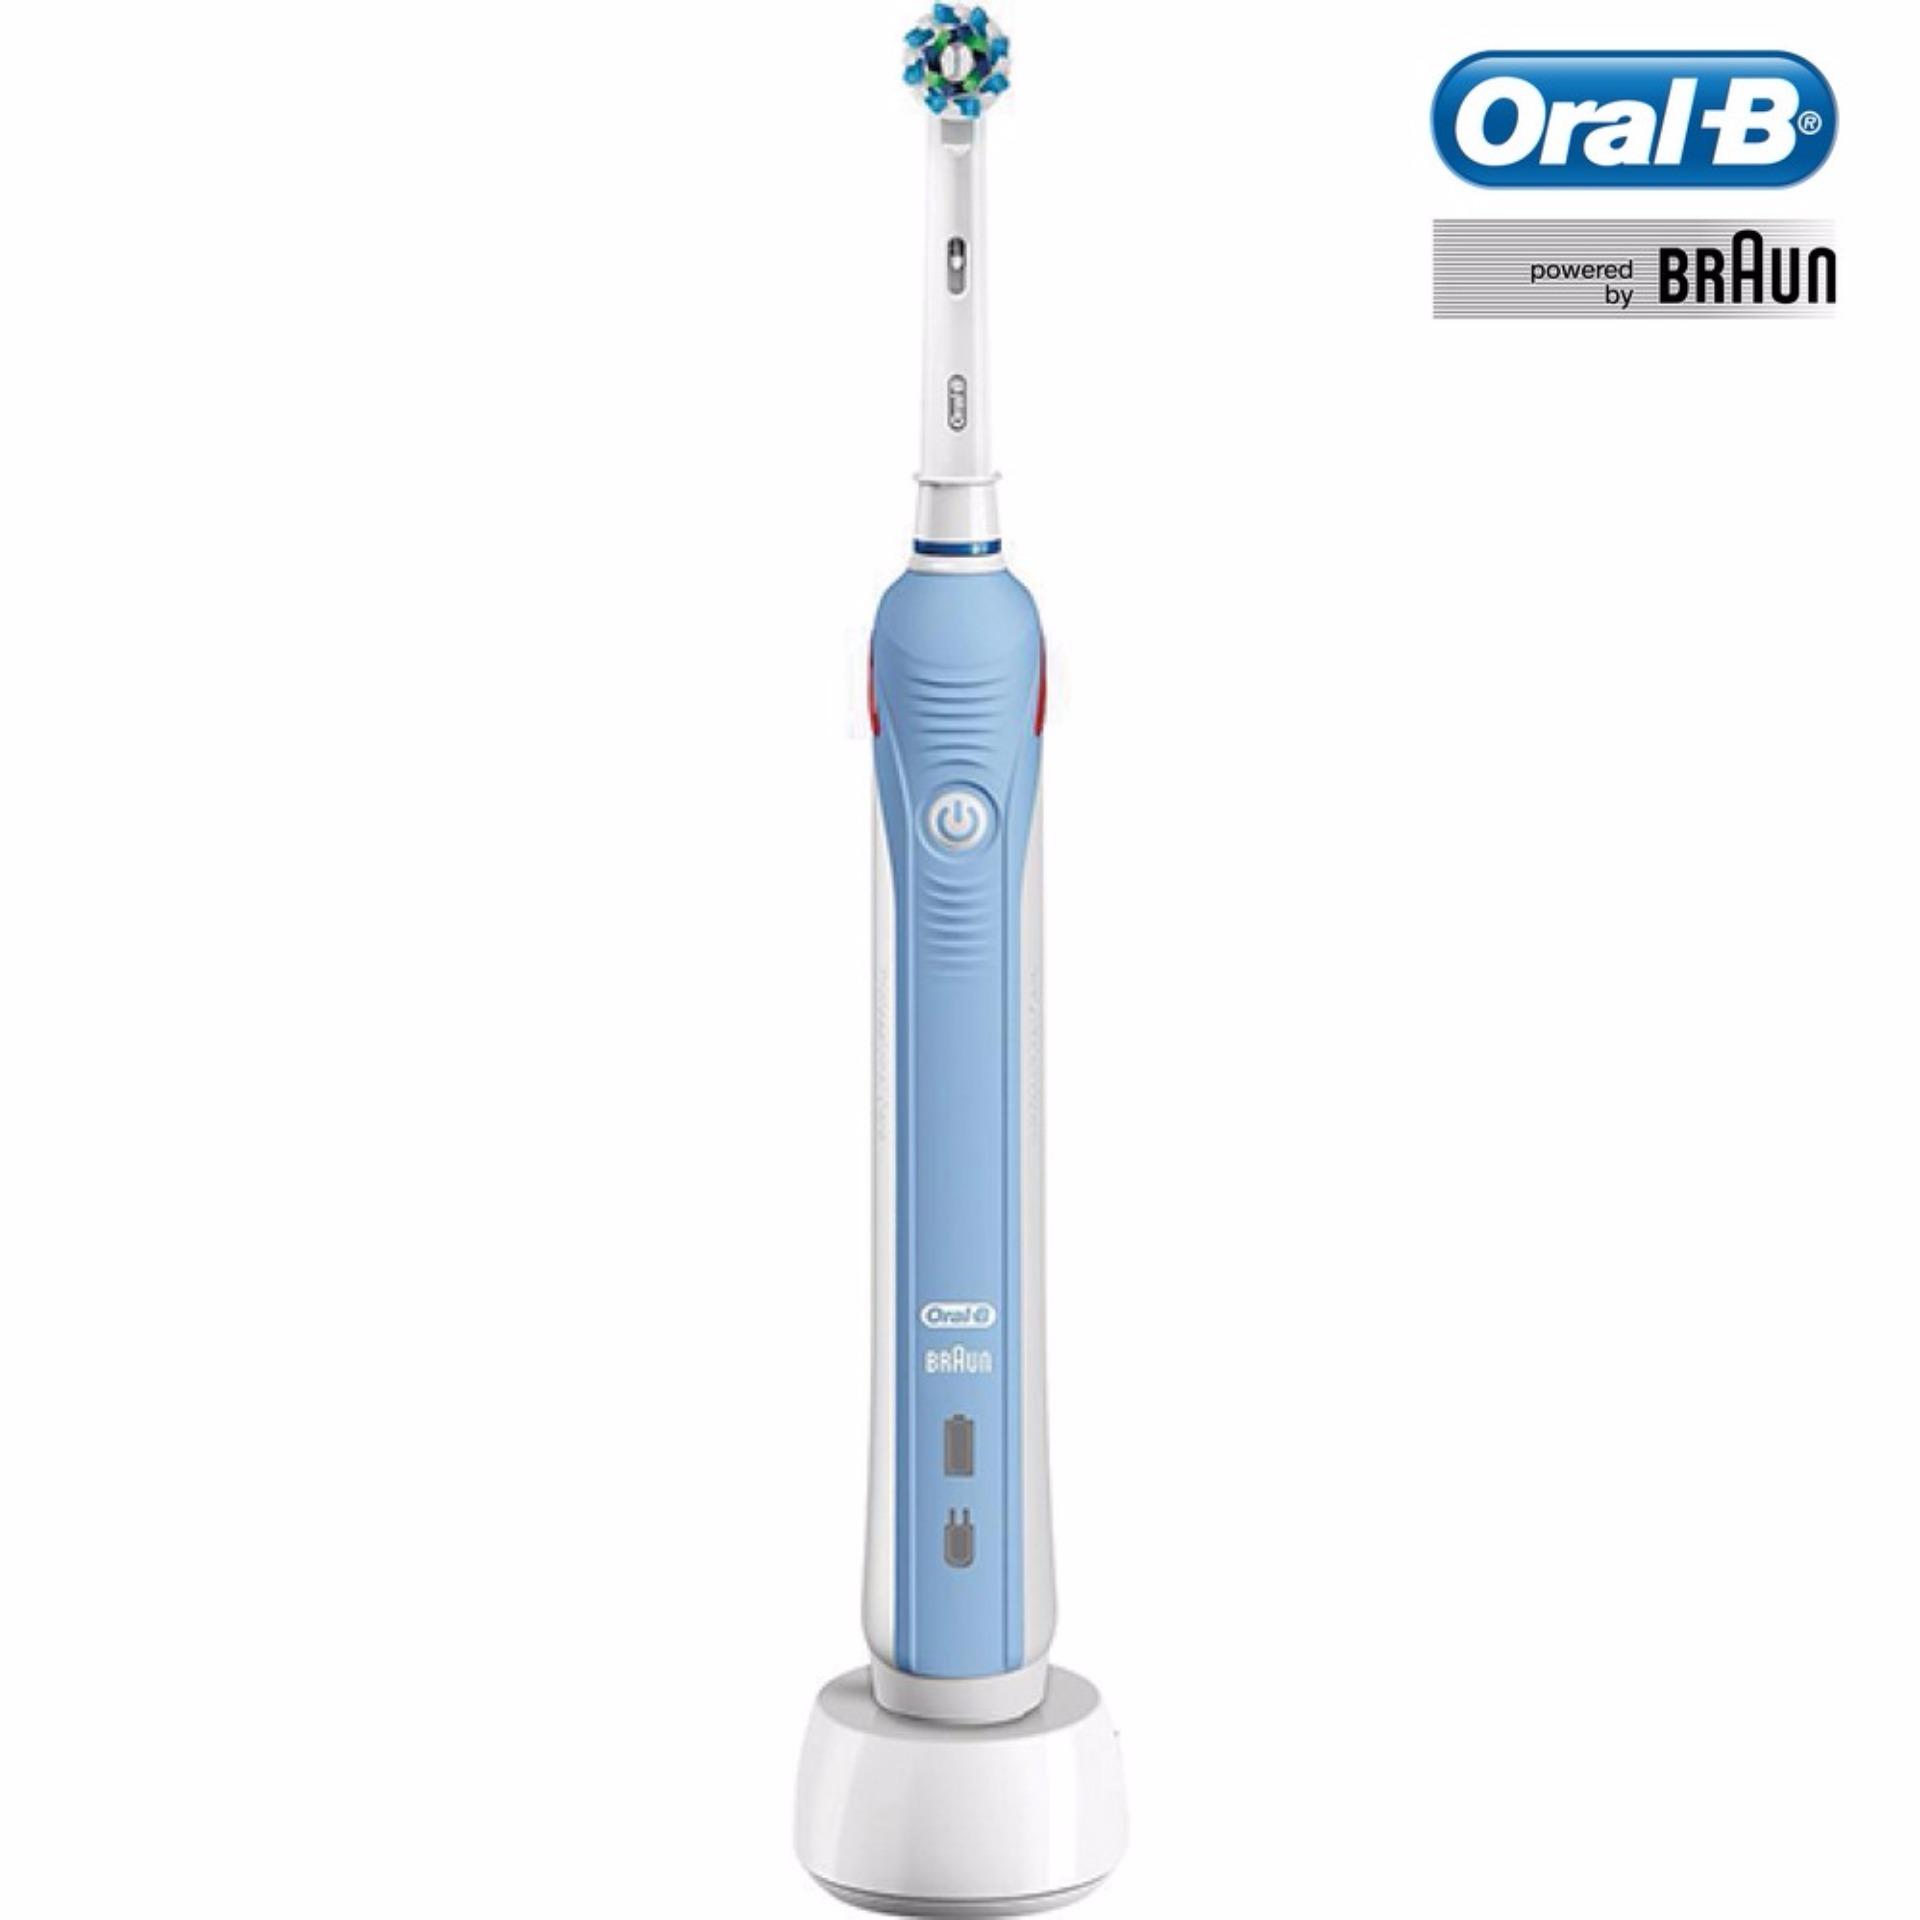 แปรงสีฟันไฟฟ้าเพื่อรอยยิ้มขาวสดใส พัทลุง แปรงสีฟันไฟฟ้า Oral B PRO1000  D20 513 2M 